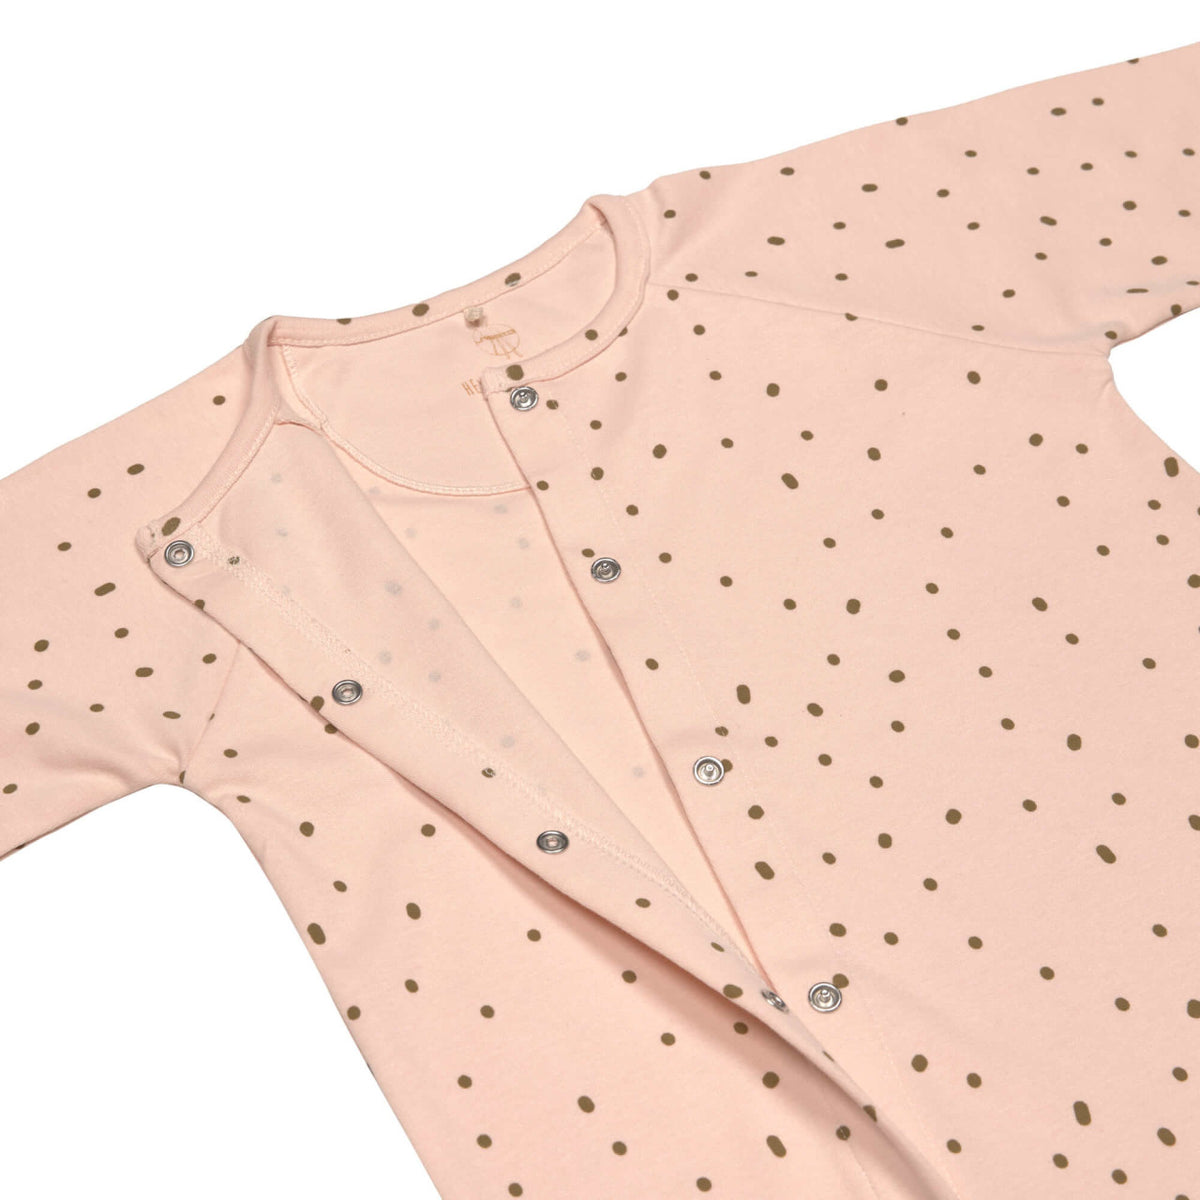 Pyjama with feet GOTS - Cozy Colors, powder pink